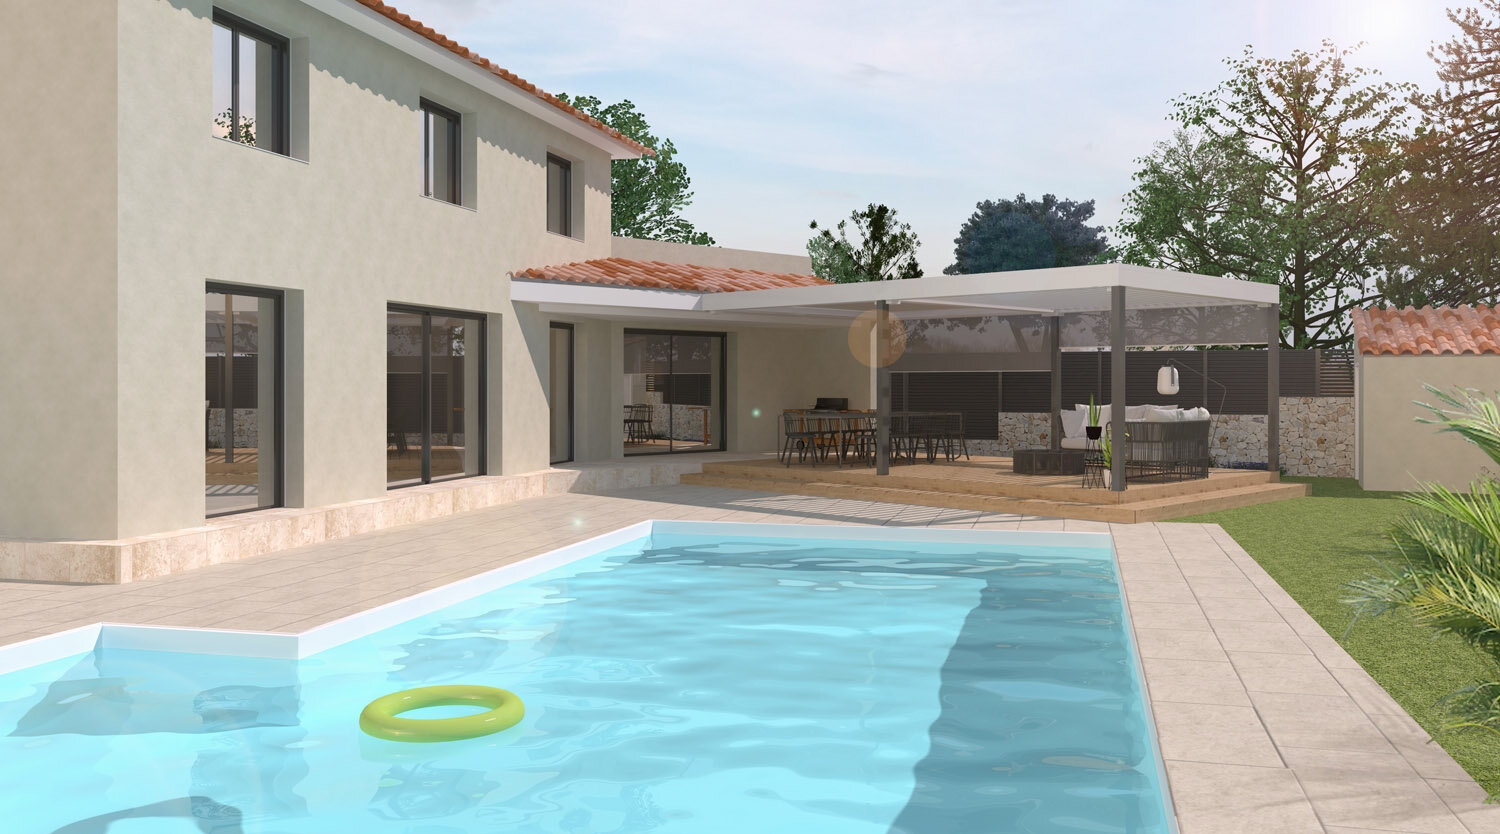 Vue piscine villa beaumont marseille.jpg